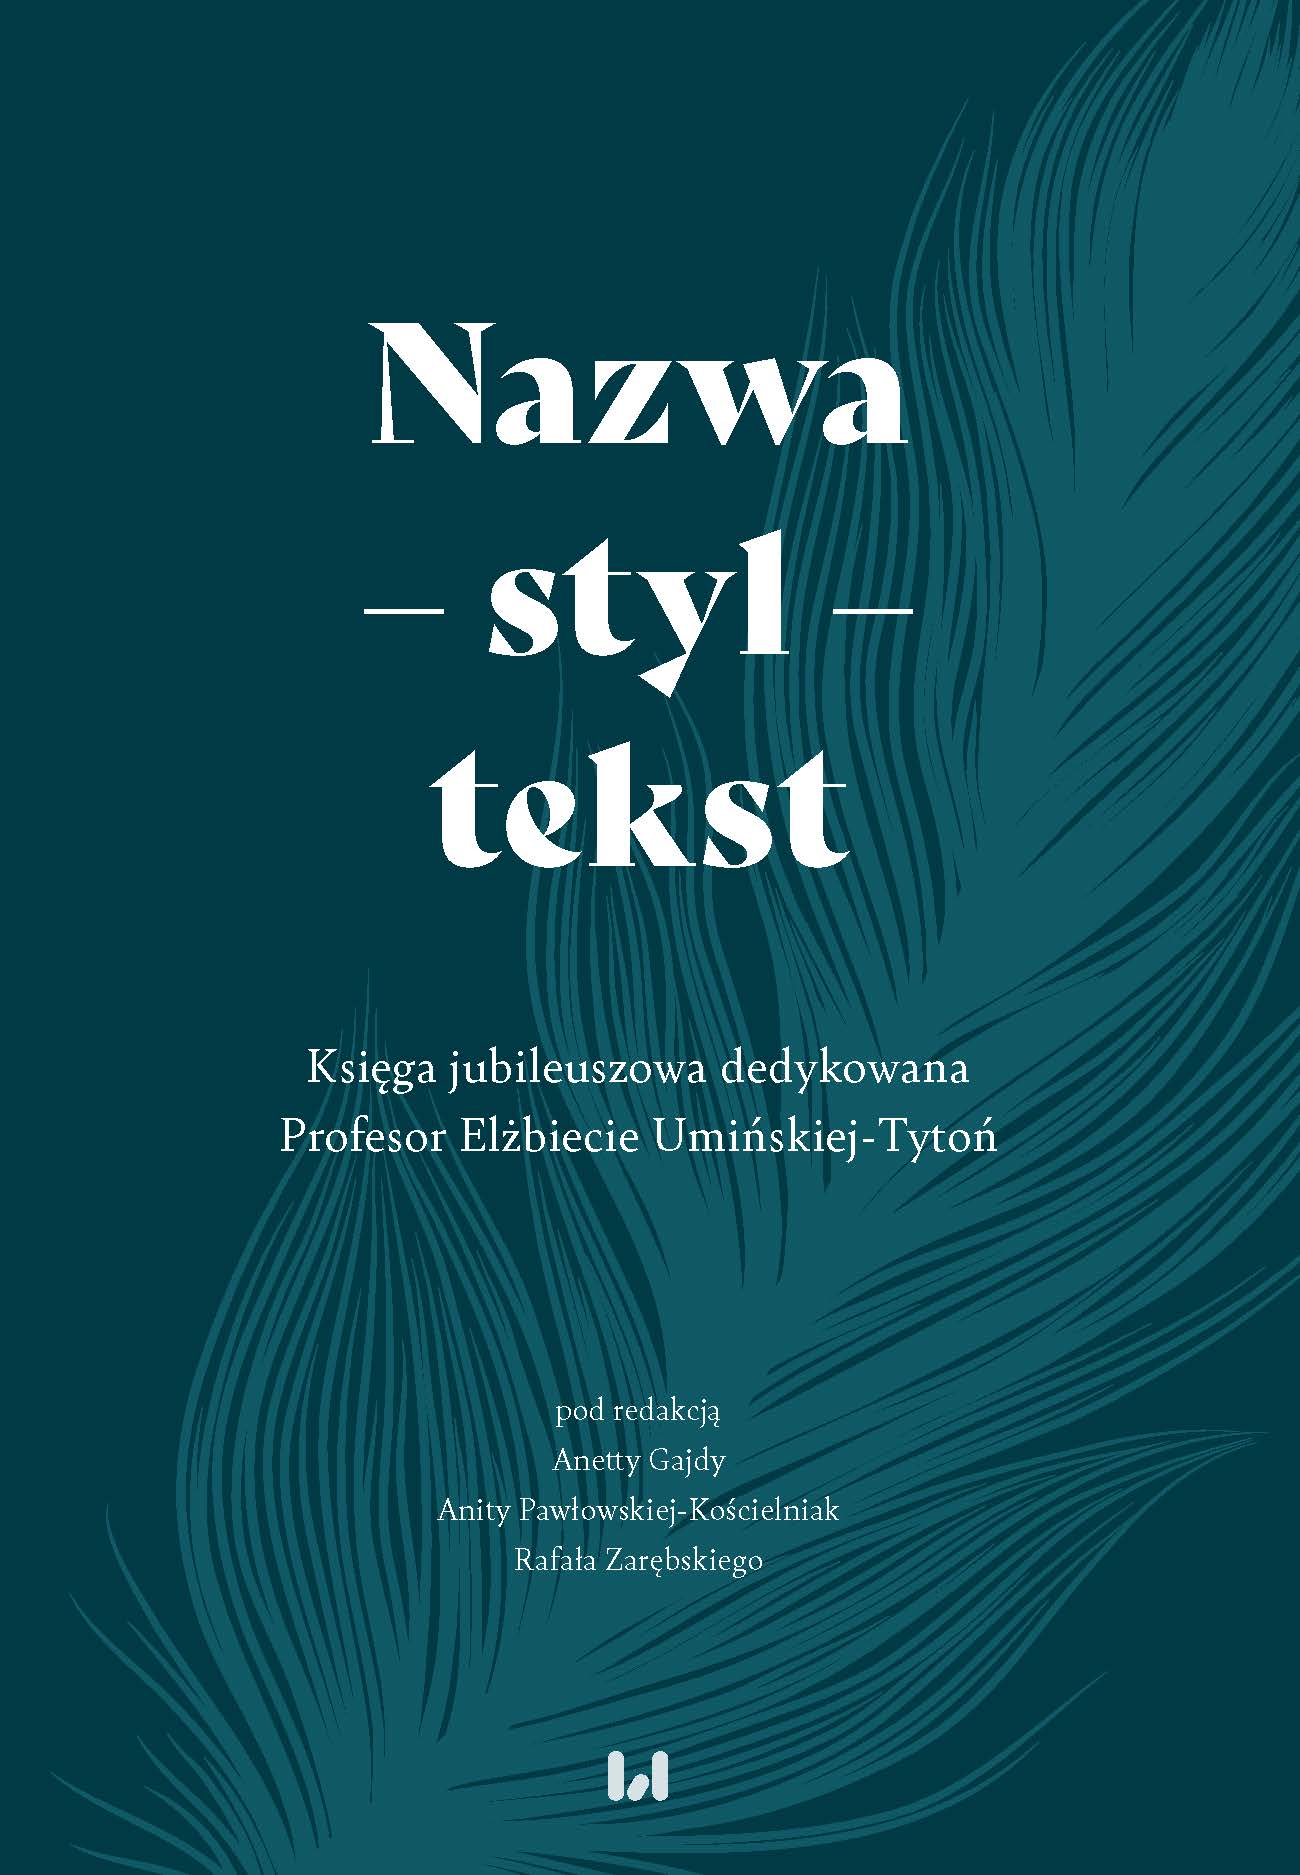 Name – style – text. A jubilee book dedicated to Professor Elżebieta Umińska-Tytoń